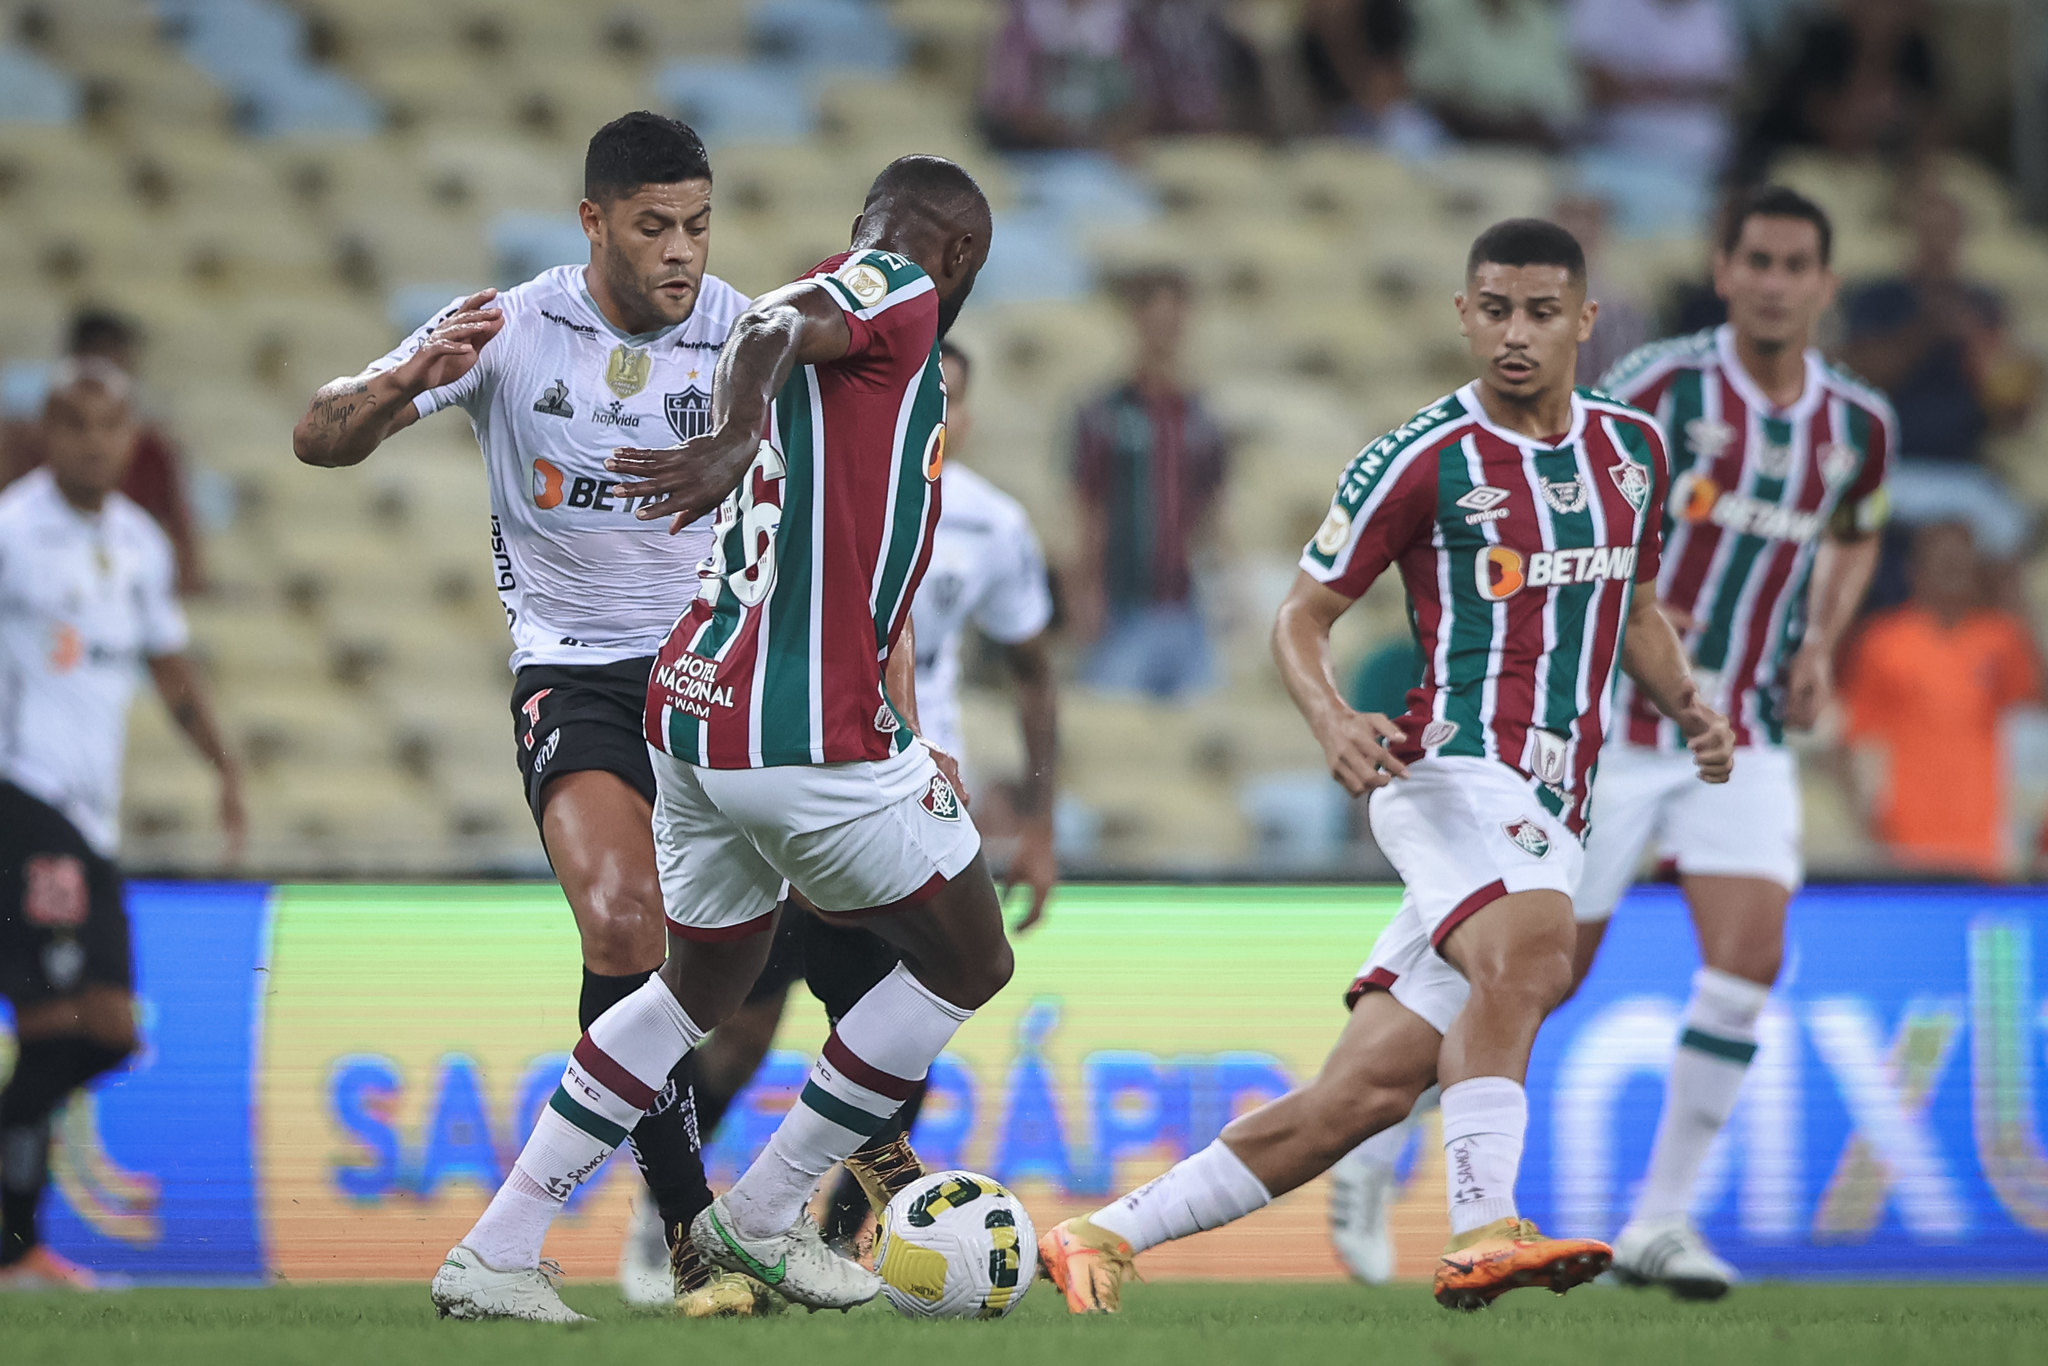 O Fluminense venceu o Atlético-MG, por 5 a 3, no último jogo disputado entre as equipes no Rio de Janeiro Foto: Pedro Souza / Atlético-MG